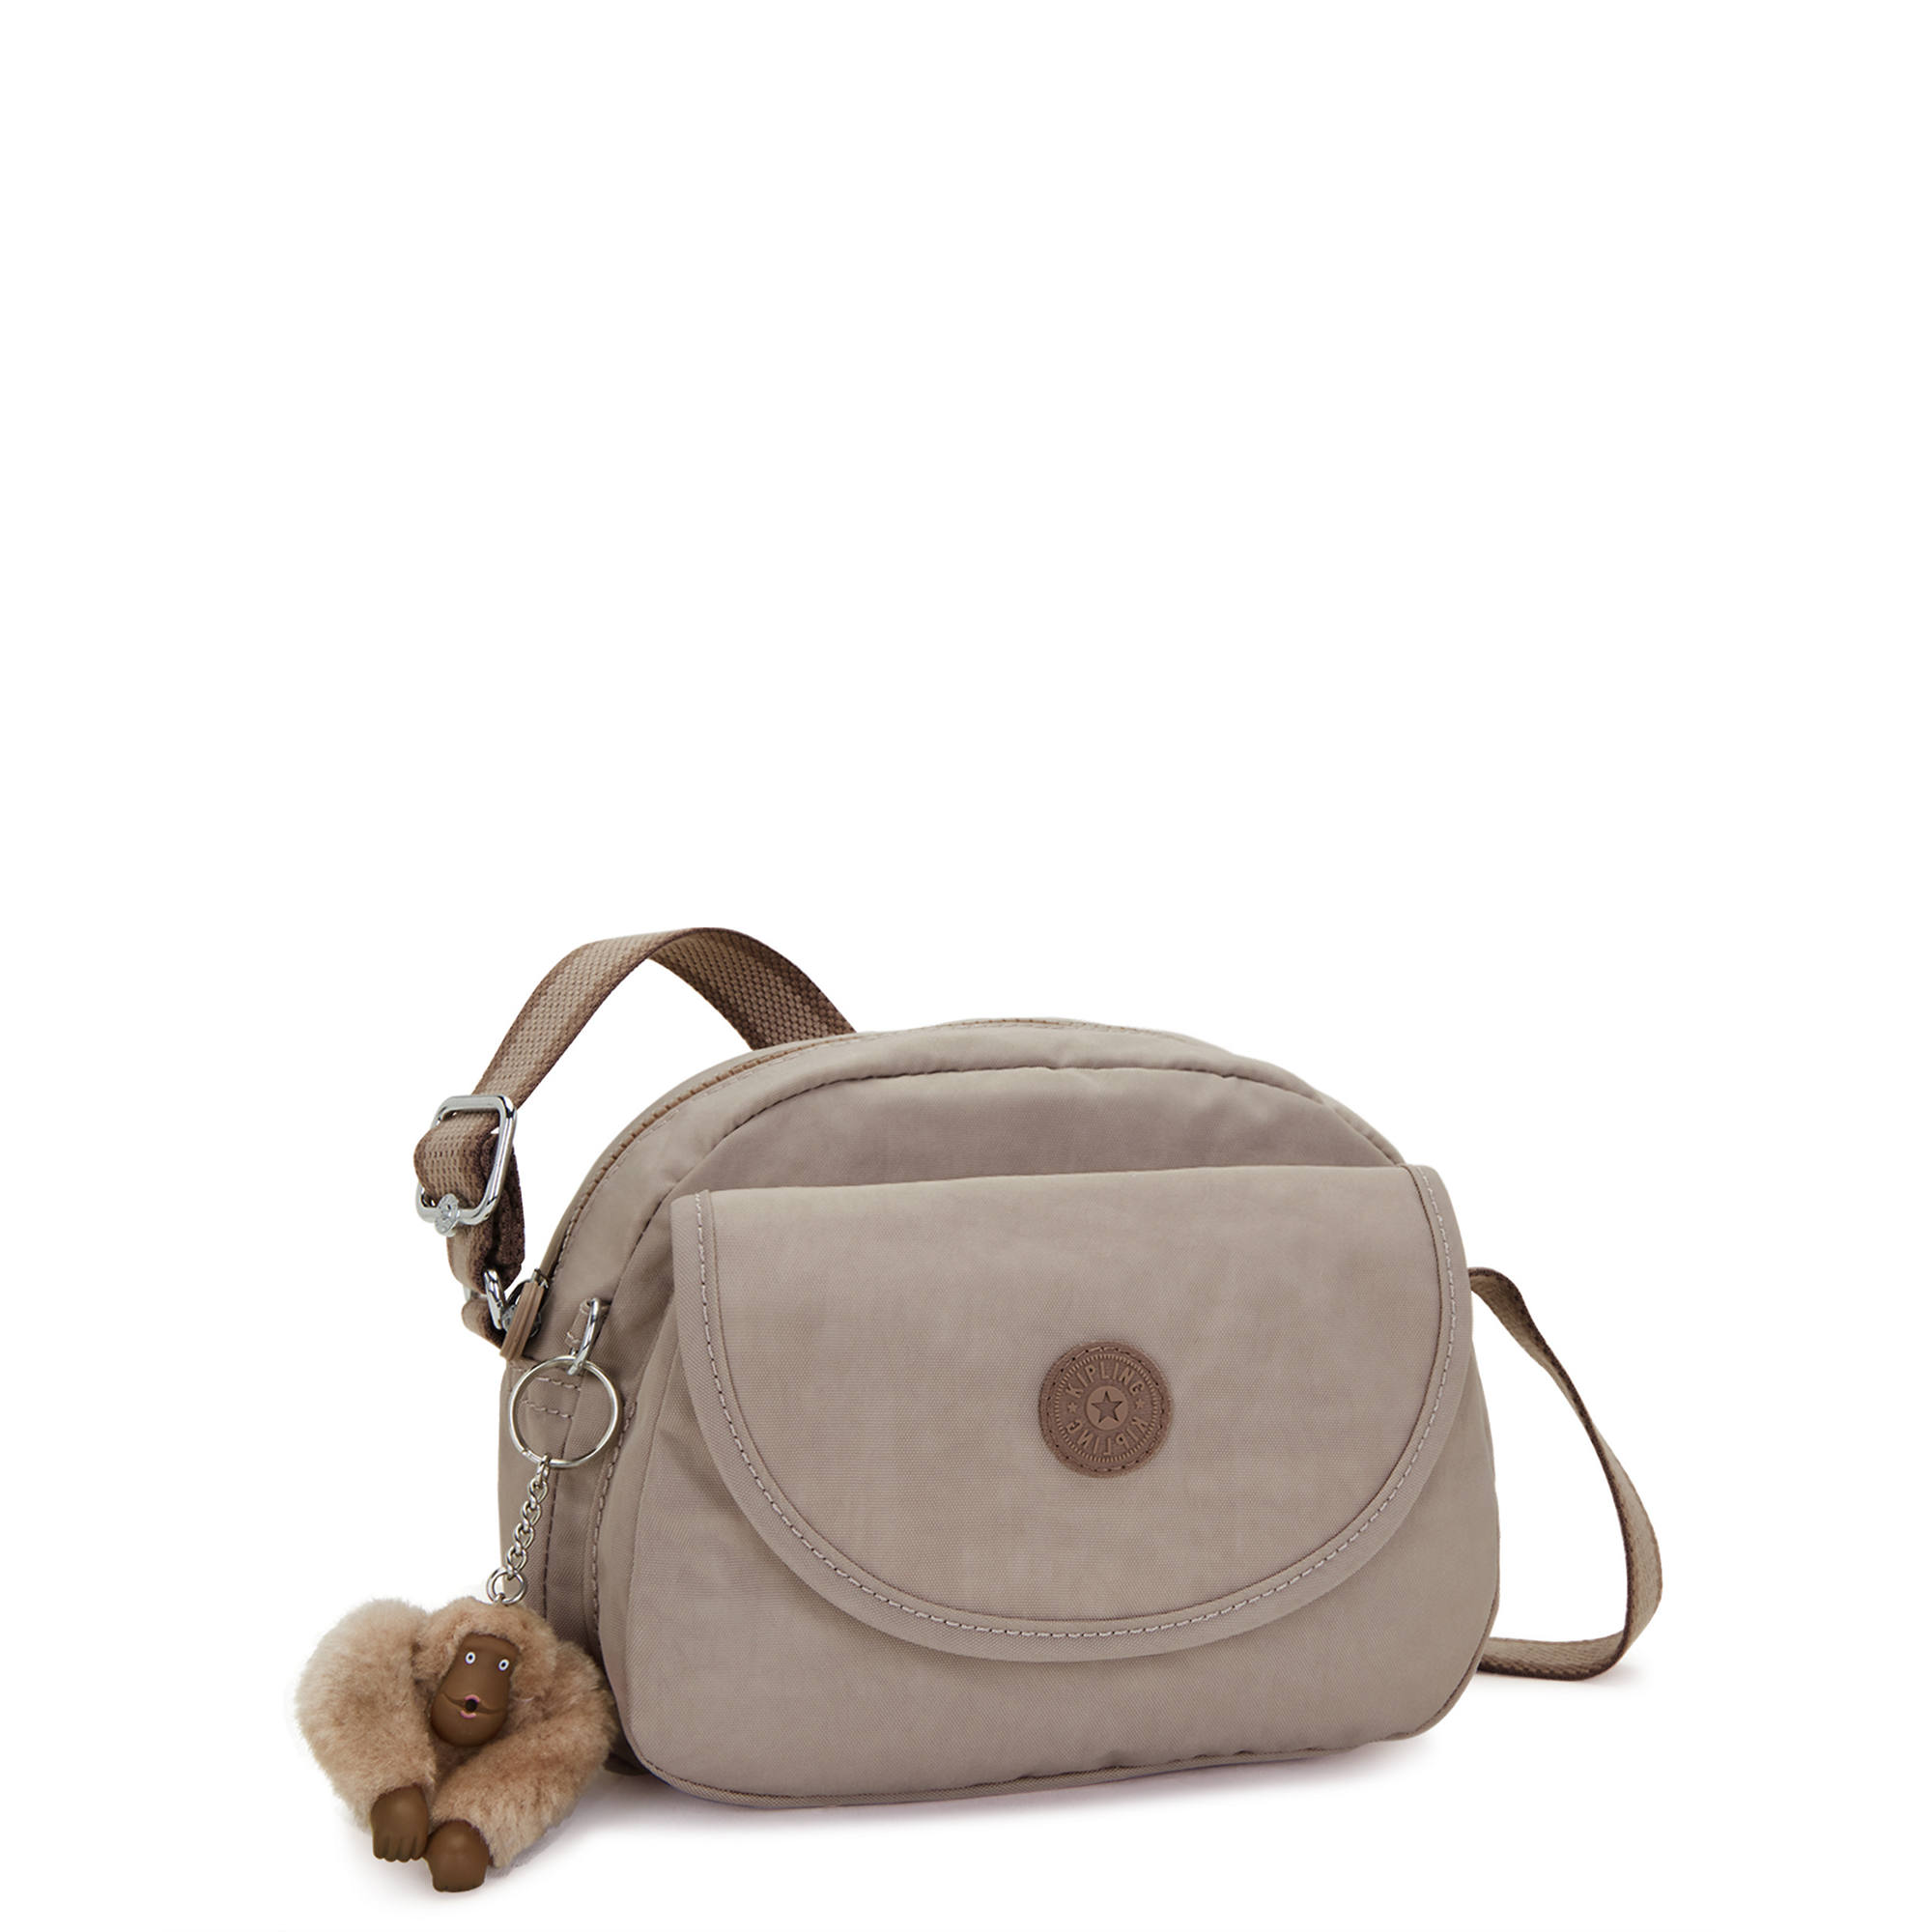 Kipling Women's Stelma Crossbody Handbag with Adjustable Strap | eBay